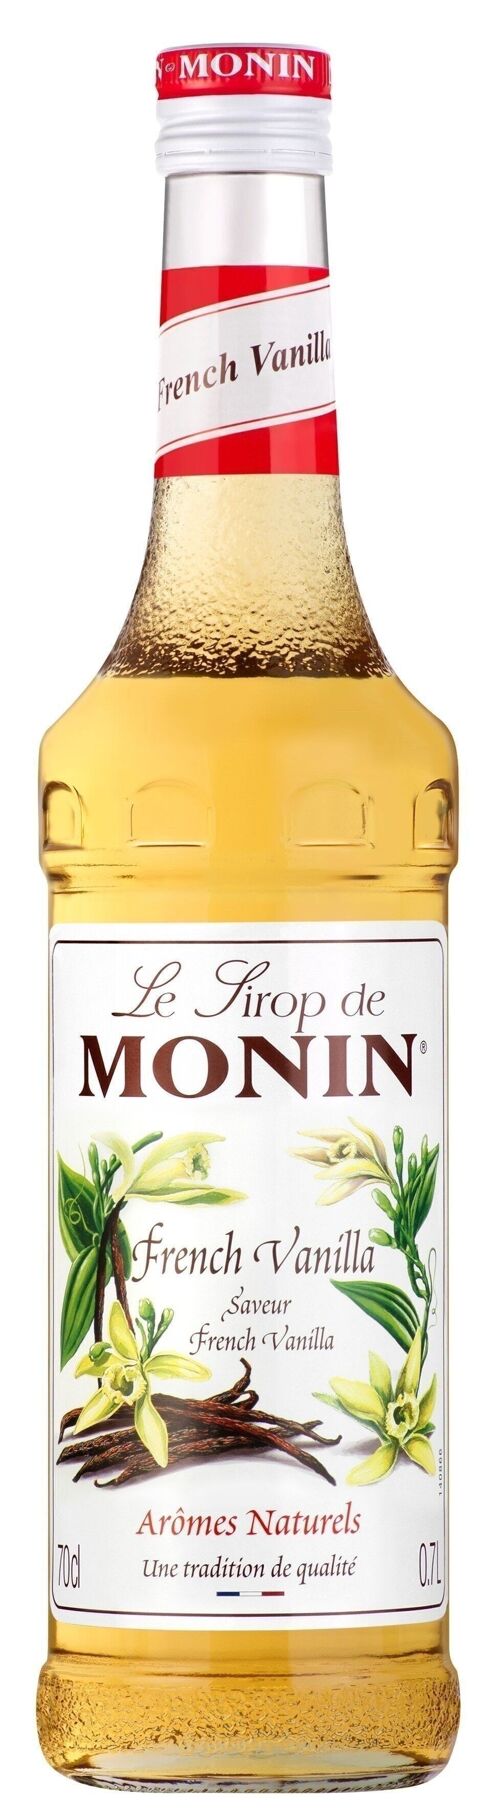 Sirop de French Vanilla pour aromatiser vos desserts de la fête des mères - Arômes naturels - 70cl